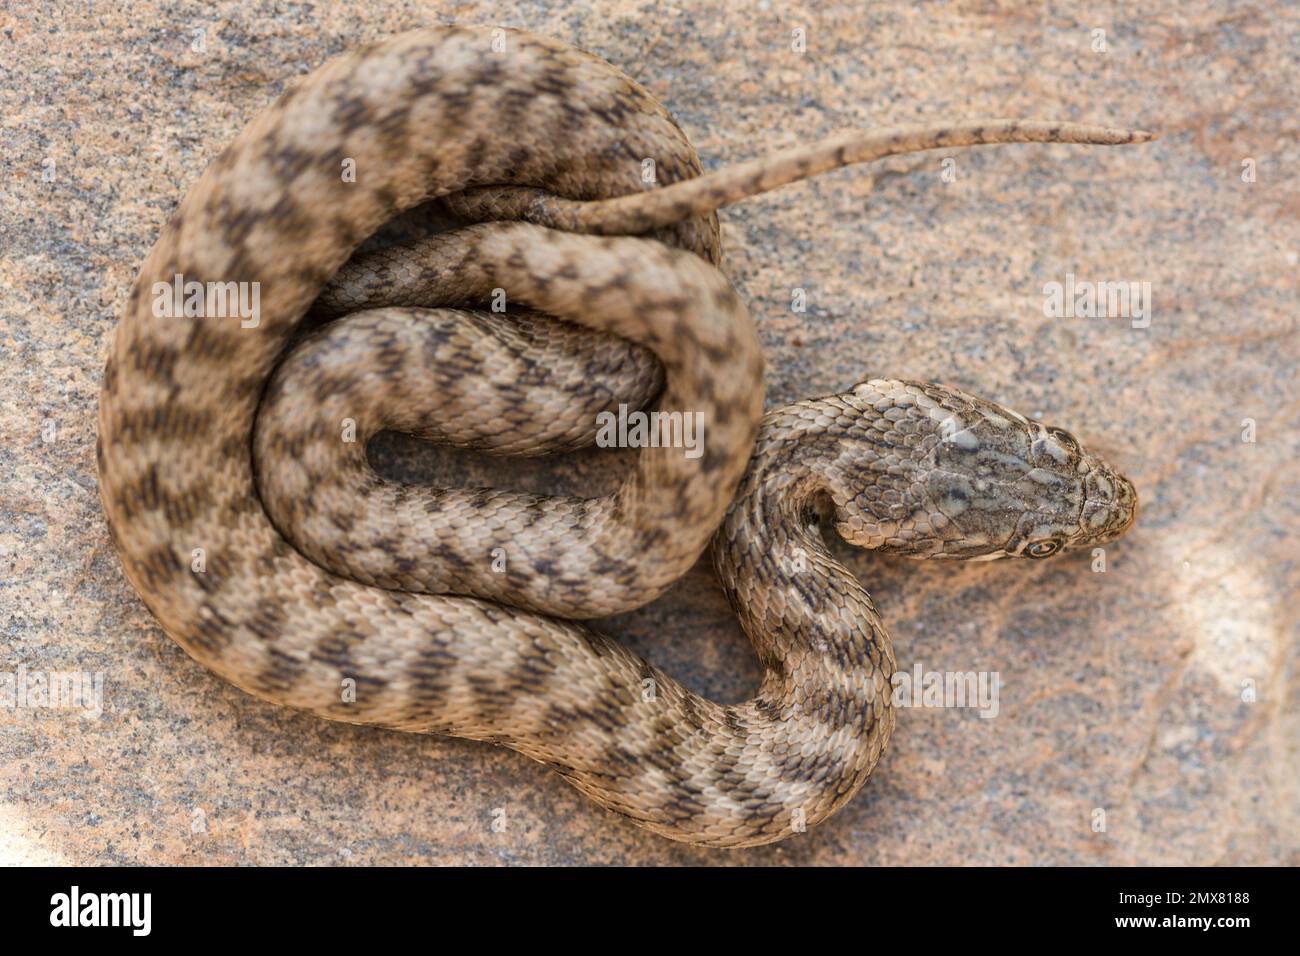 Natrix sauvage maura serpent avec écailles de camouflage glissant sur la pierre Banque D'Images